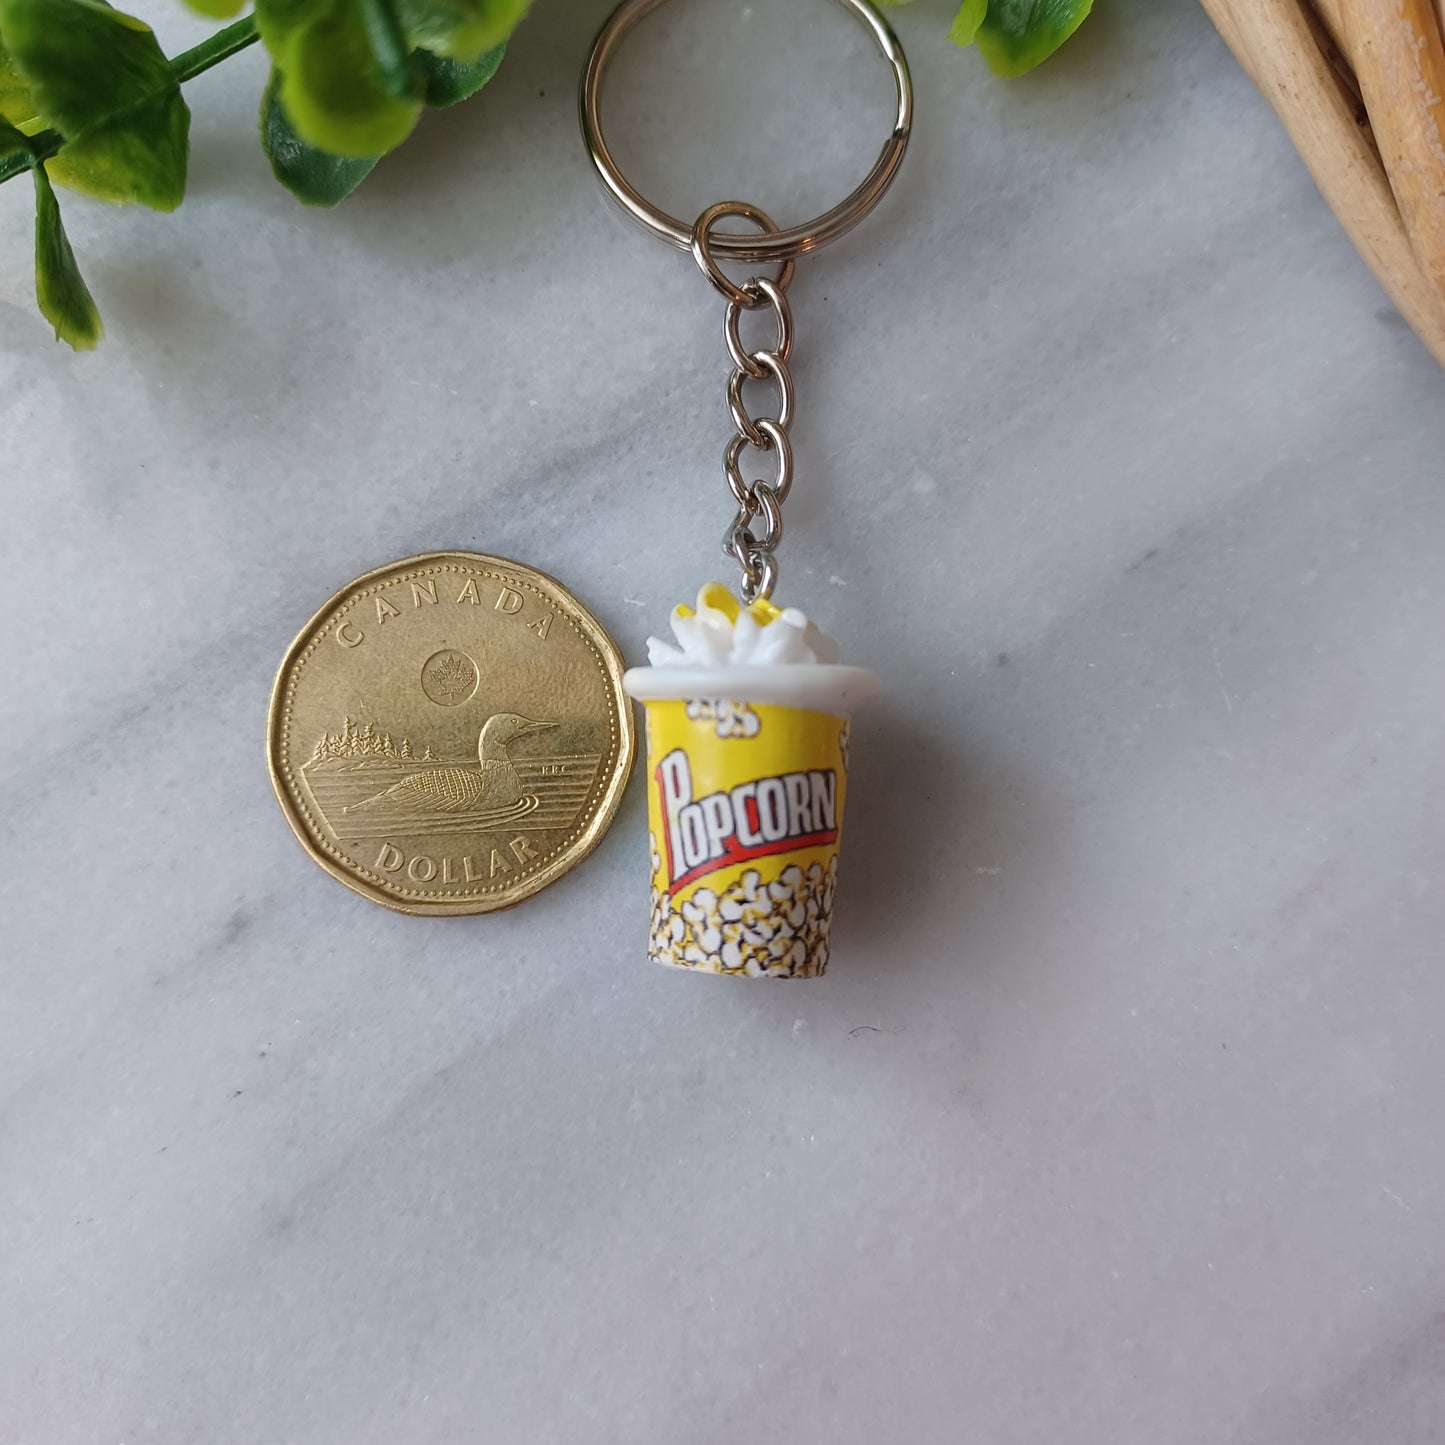 Porte-clés Popcorn/Popcorn keychain